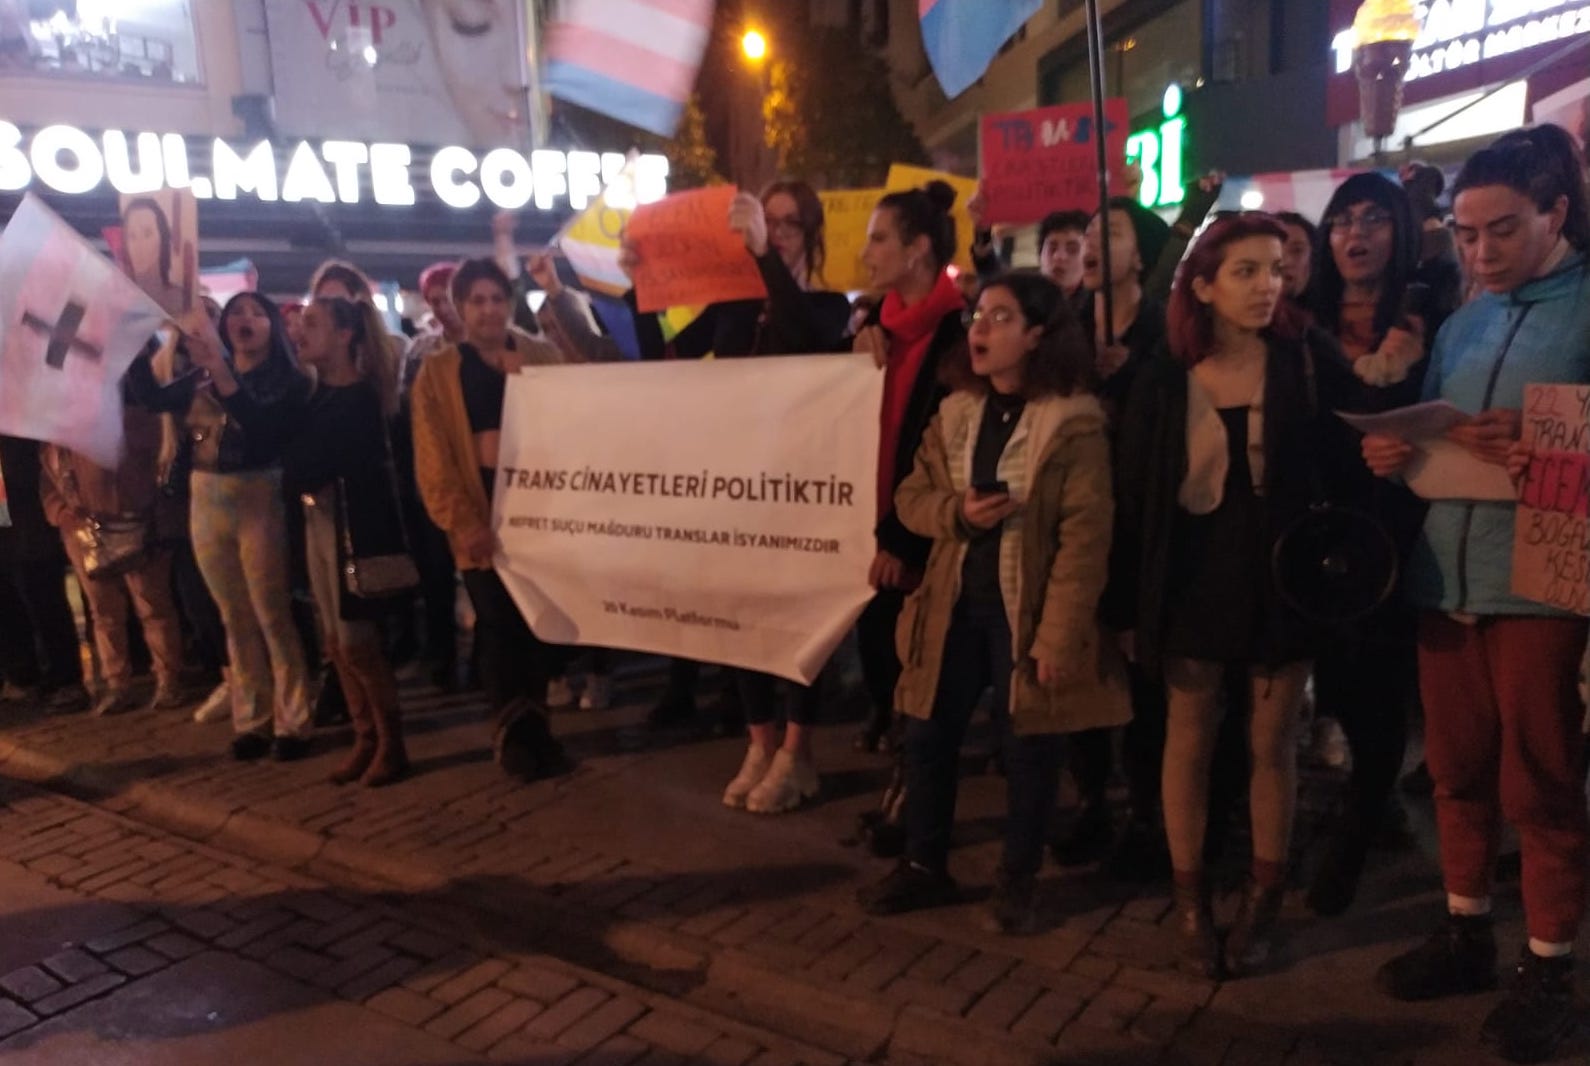 İzmir’de Ecem Seçkin için eylem: Nefret büyüyor, devlet koruyor | Kaos GL - LGBTİ+ Haber Portalı Haber